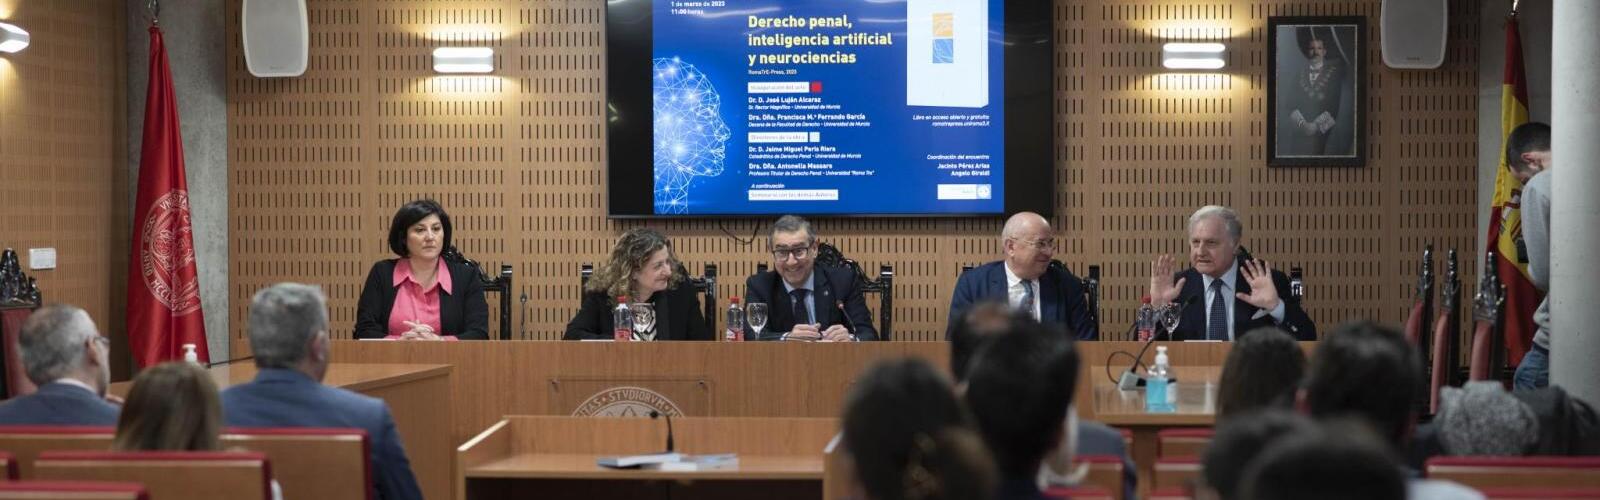 La Universidad de Murcia presenta el libro ‘Derecho penal, inteligencia artificial y neurociencias’ del catedrático Jaime Peris